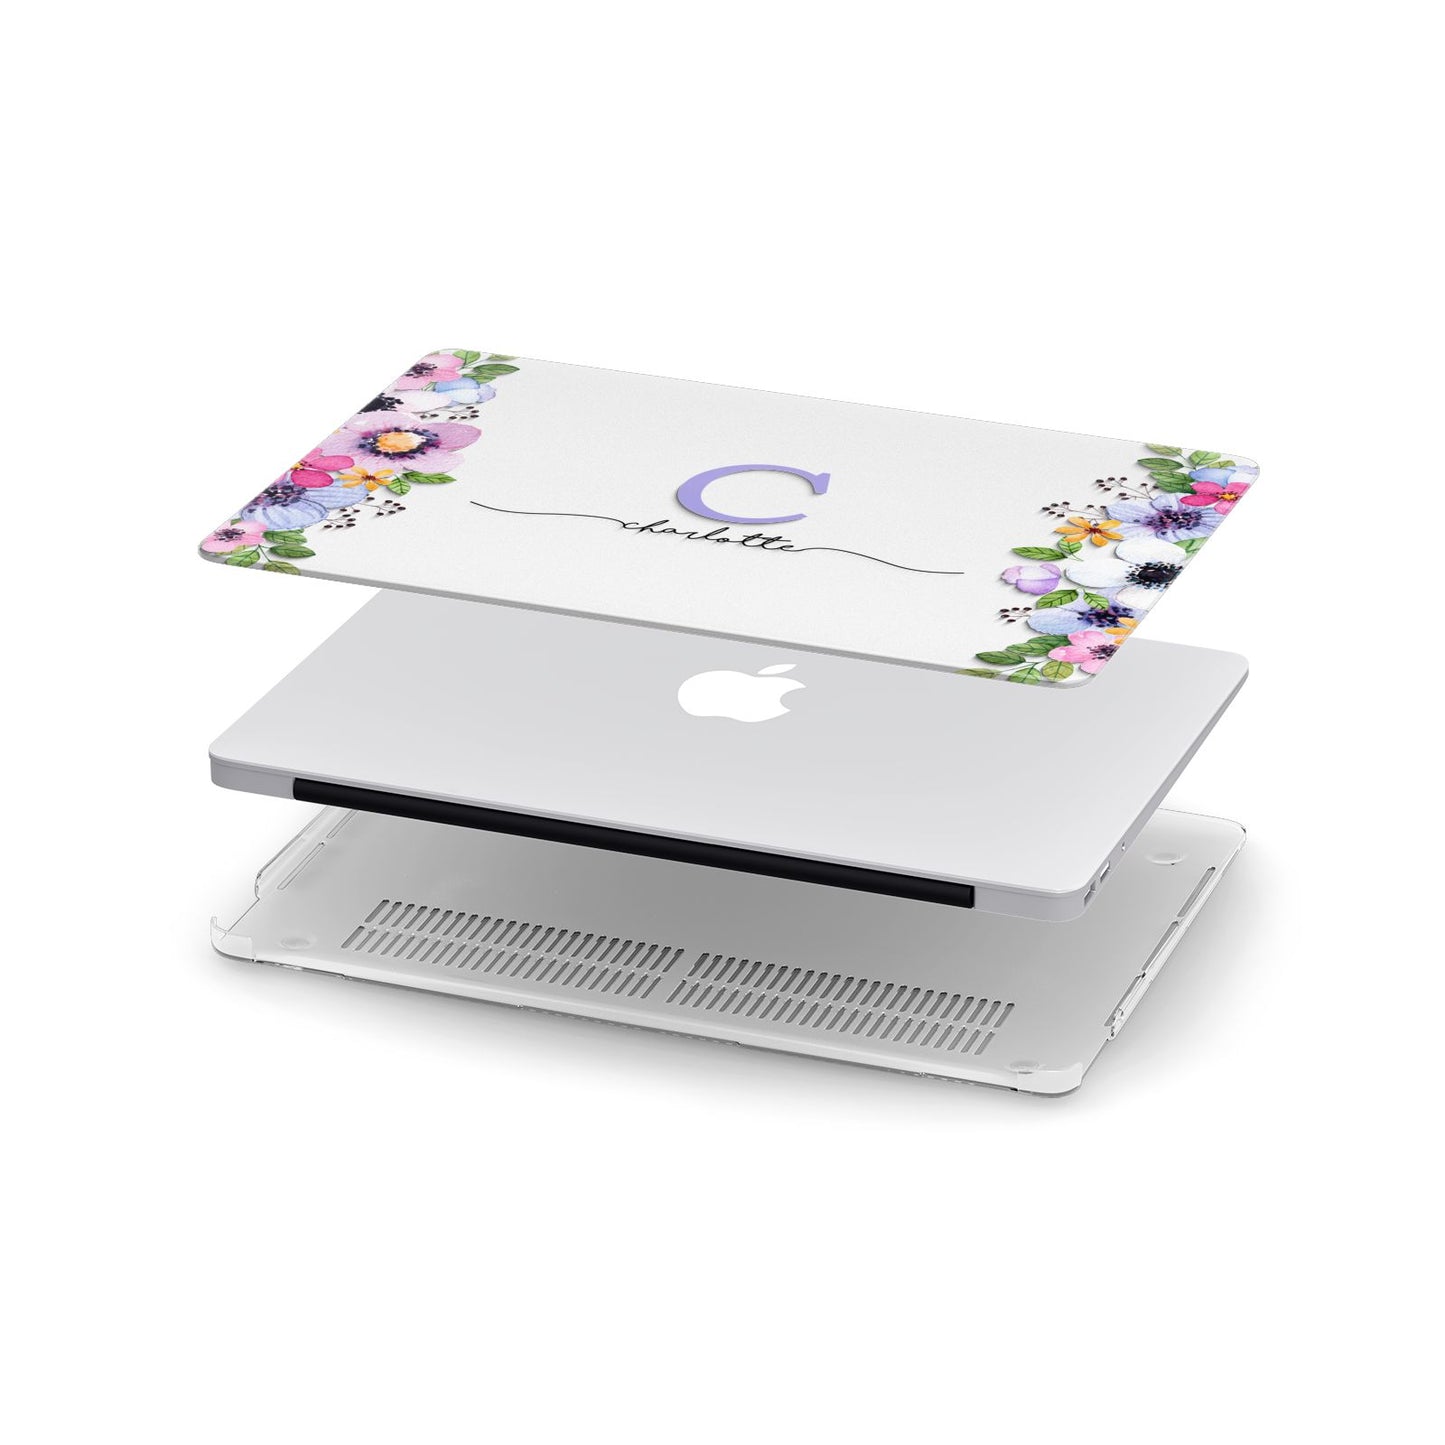 Personalised Violet Flowers Apple MacBook Case in Detail